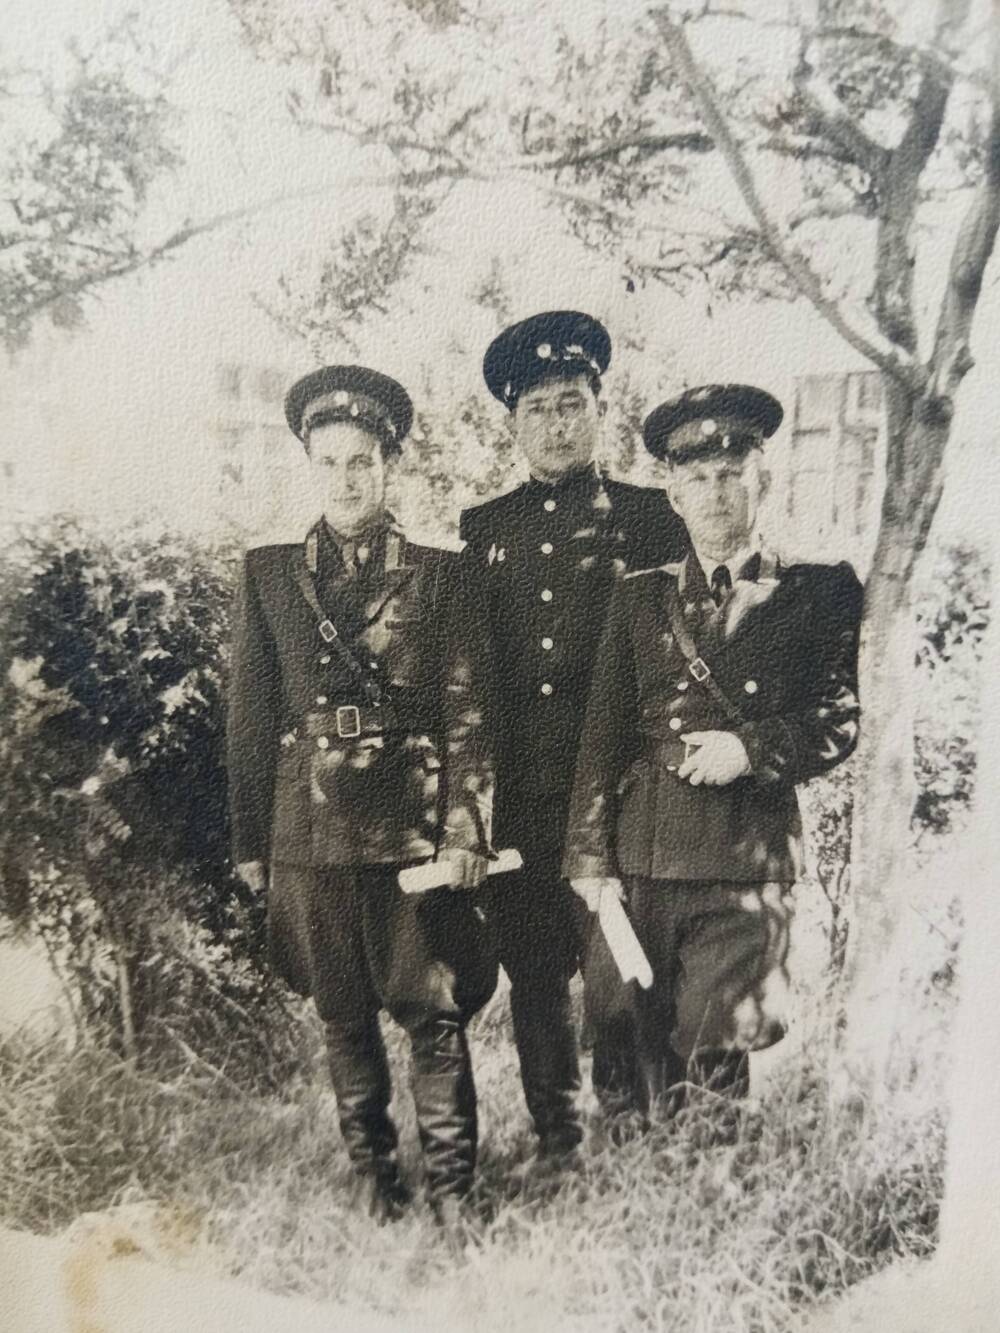 Фотография. Оригинал. Черно-белая.На снимке  трое военнослужащих. СССР. 1960-е годы. Выгорание снимка.